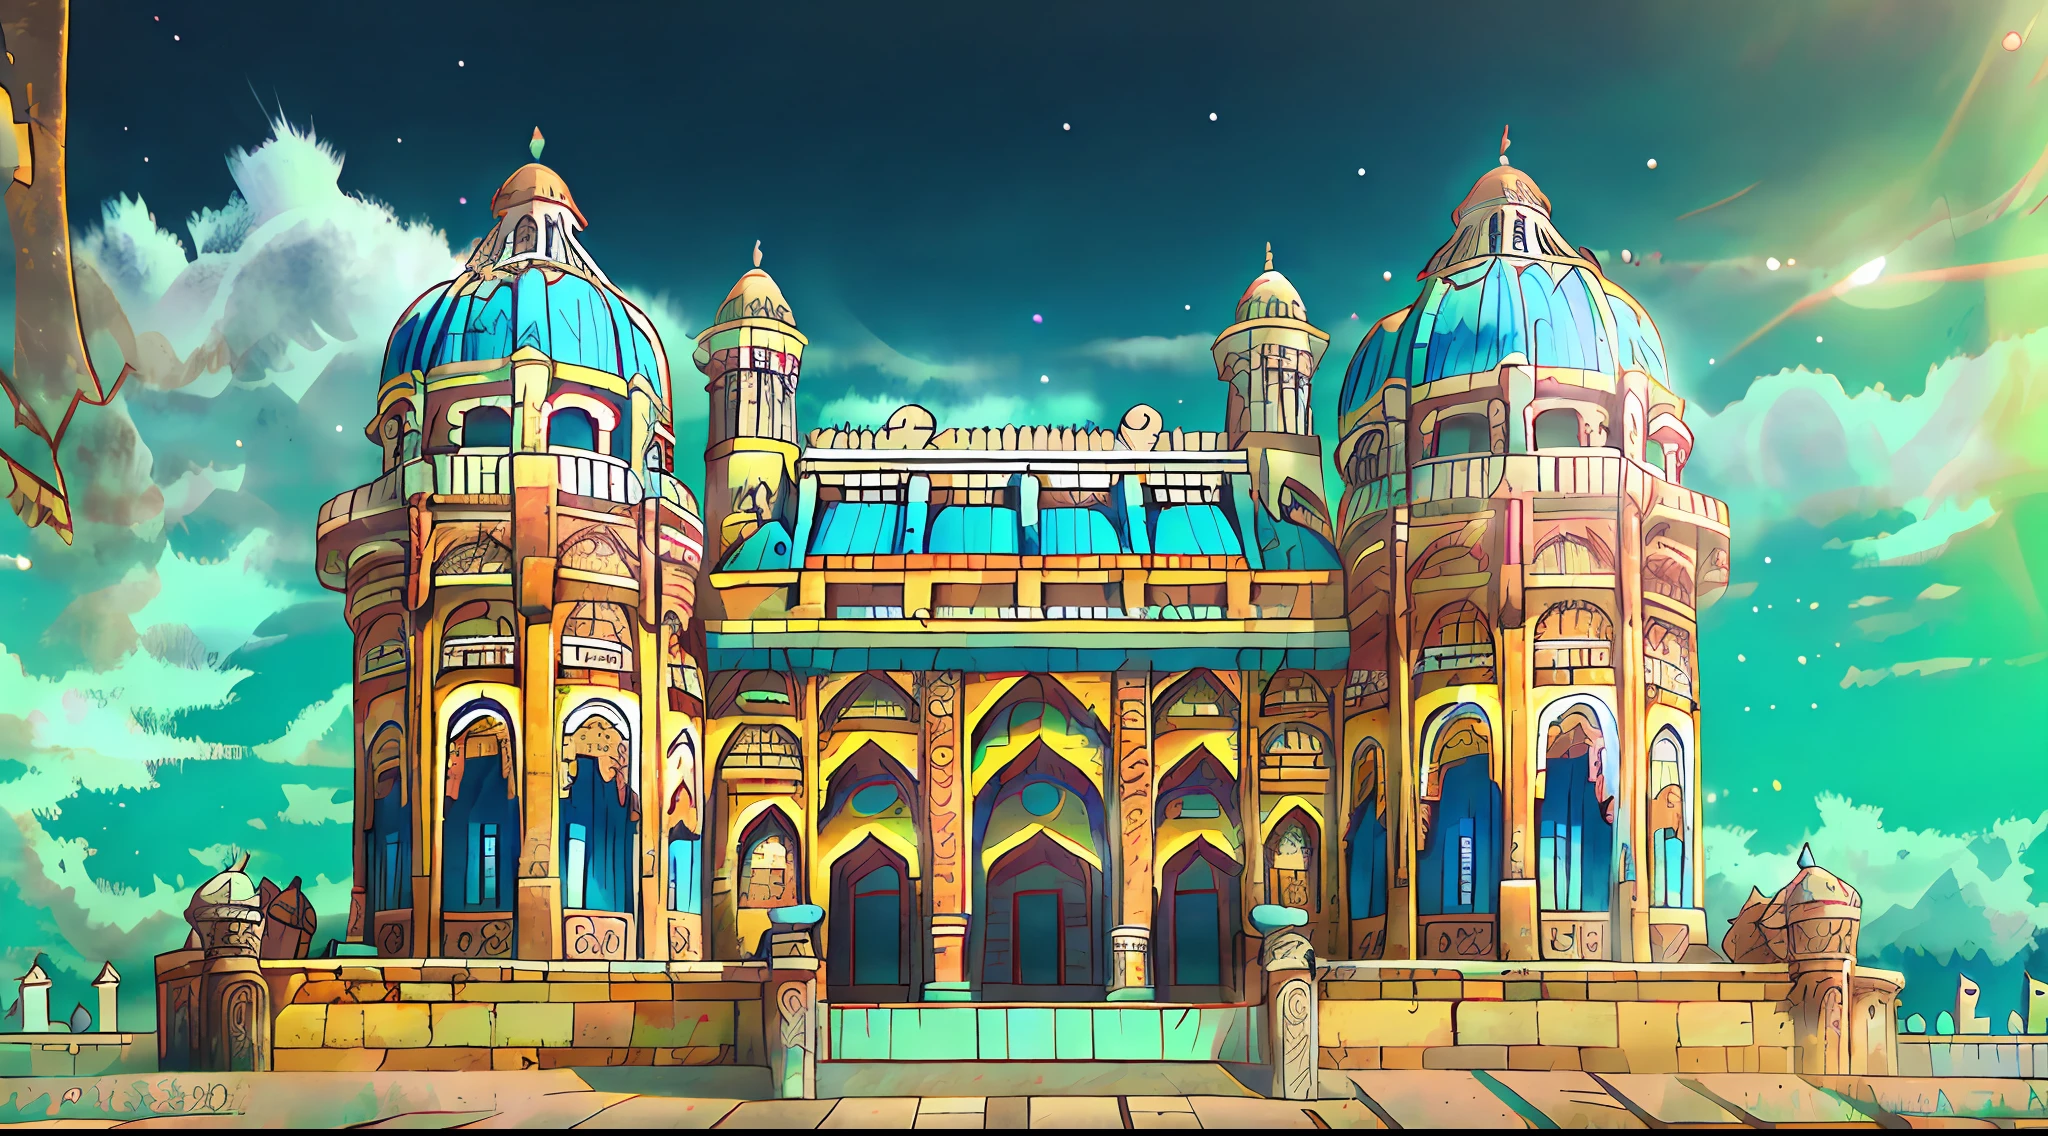 Crea una imagen realista y de alta calidad de un antiguo palacio indio., en tonos azules y amarillos, con sol y cielo azul y algunas nubes blancas.